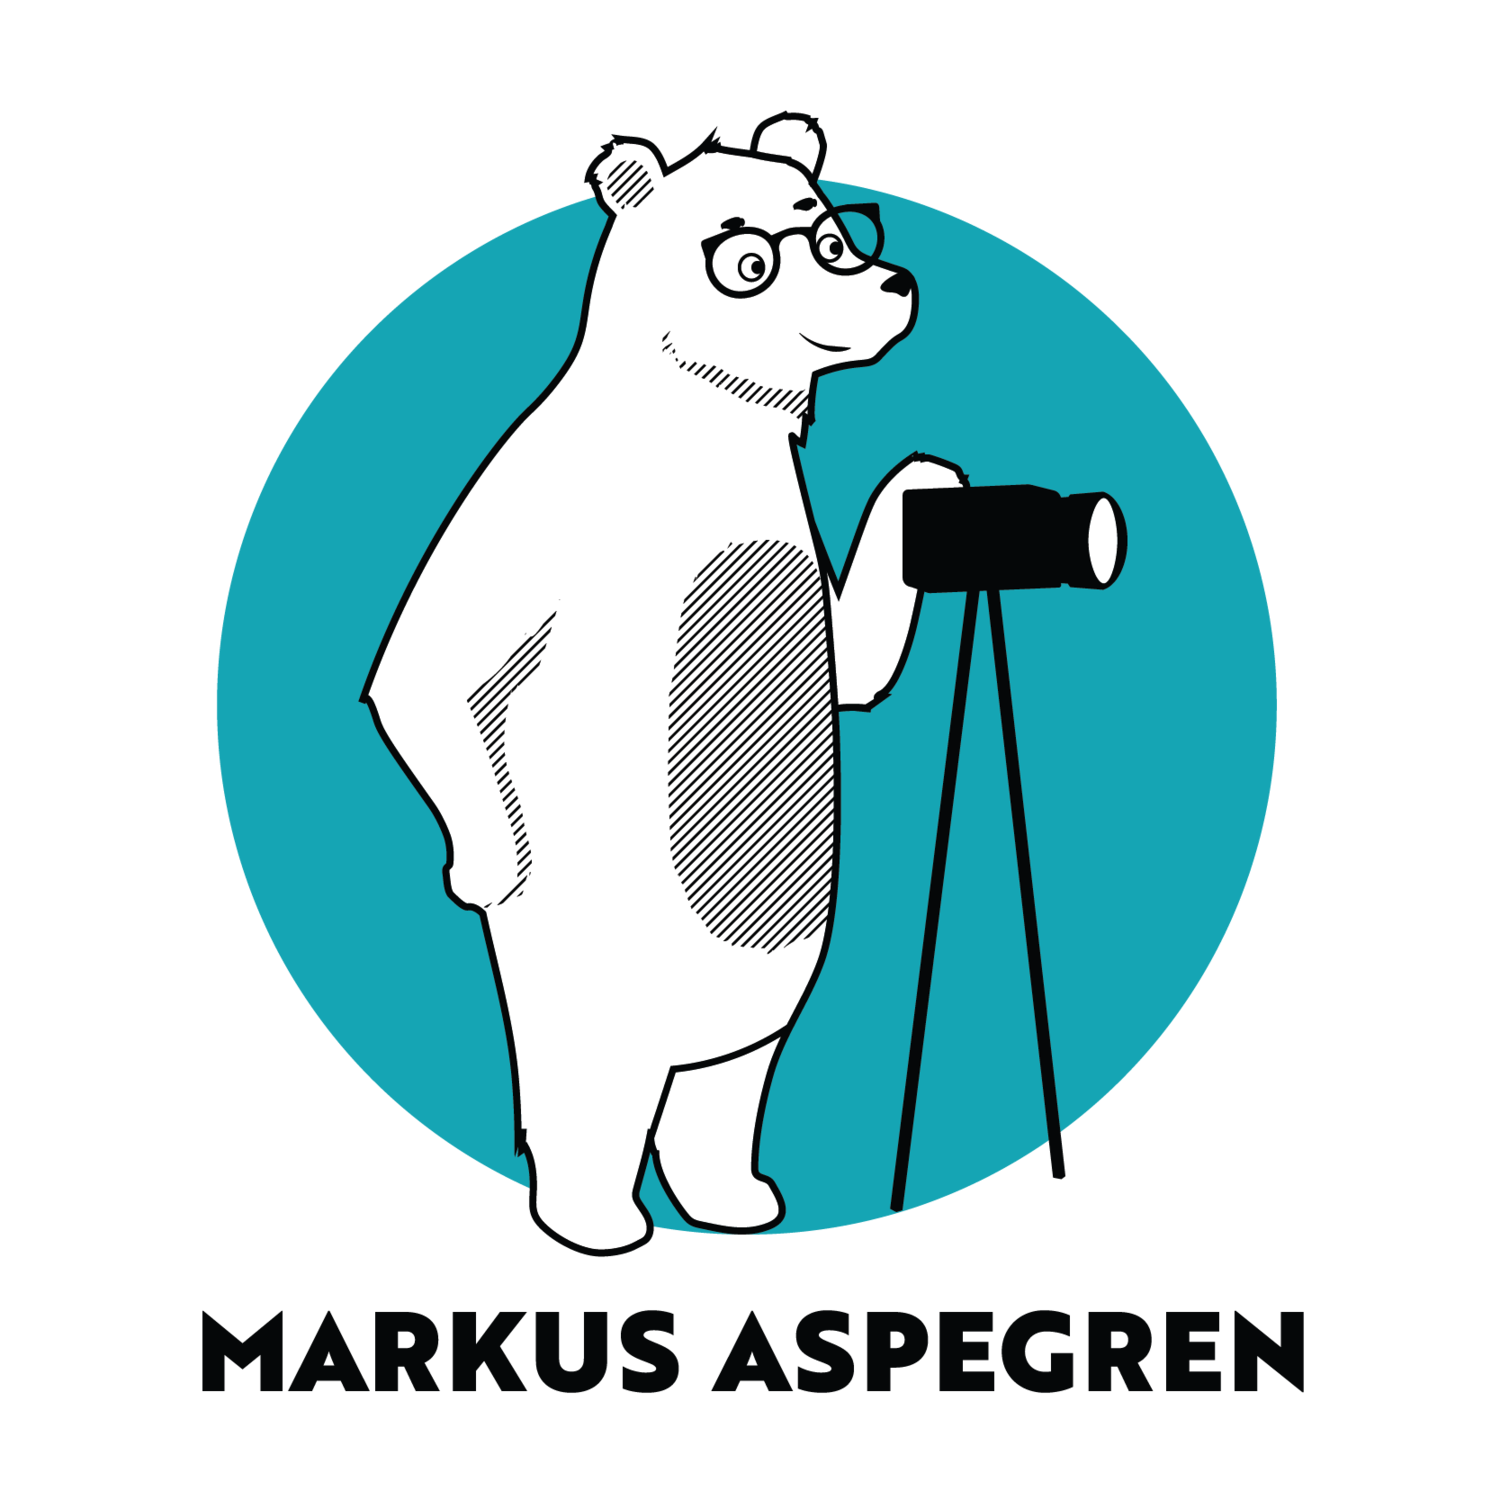 Valokuvaaja Markus Aspegren Oy